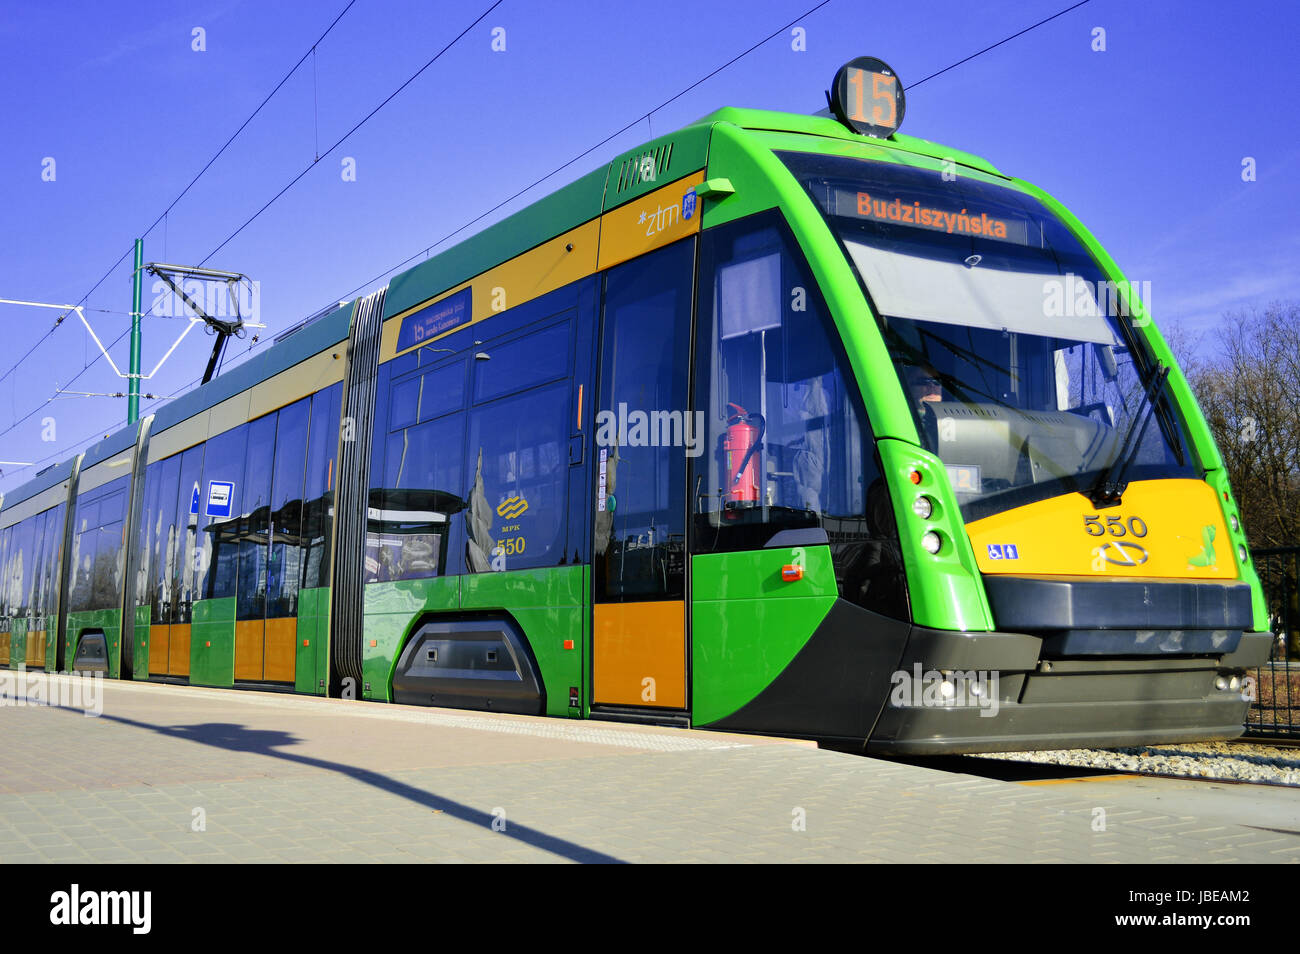 Introdujo en 2010 el tranvía Tramino es un producto de Solaris Bus & Coach, autobús, tranvía y trolebús fabricante basado en Bolechowo cerca de Poznan, Polonia Foto de stock